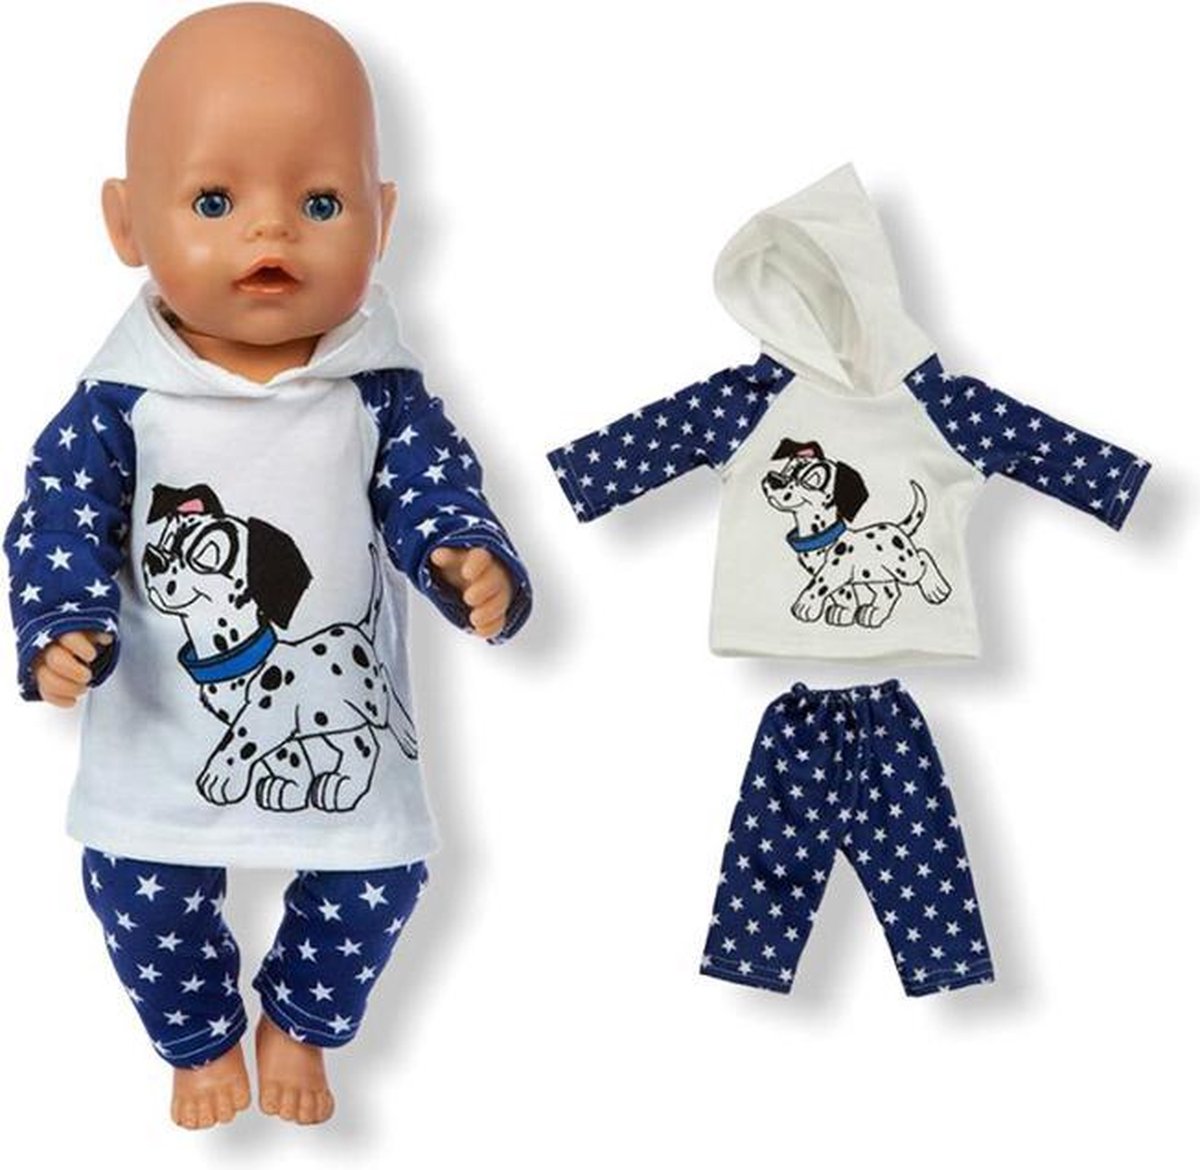 environ 45.72 cm Poupée Manteau Pantalons pour 43 cm bébé poupées vêtements 18 in poupée élastique Outfit Baby